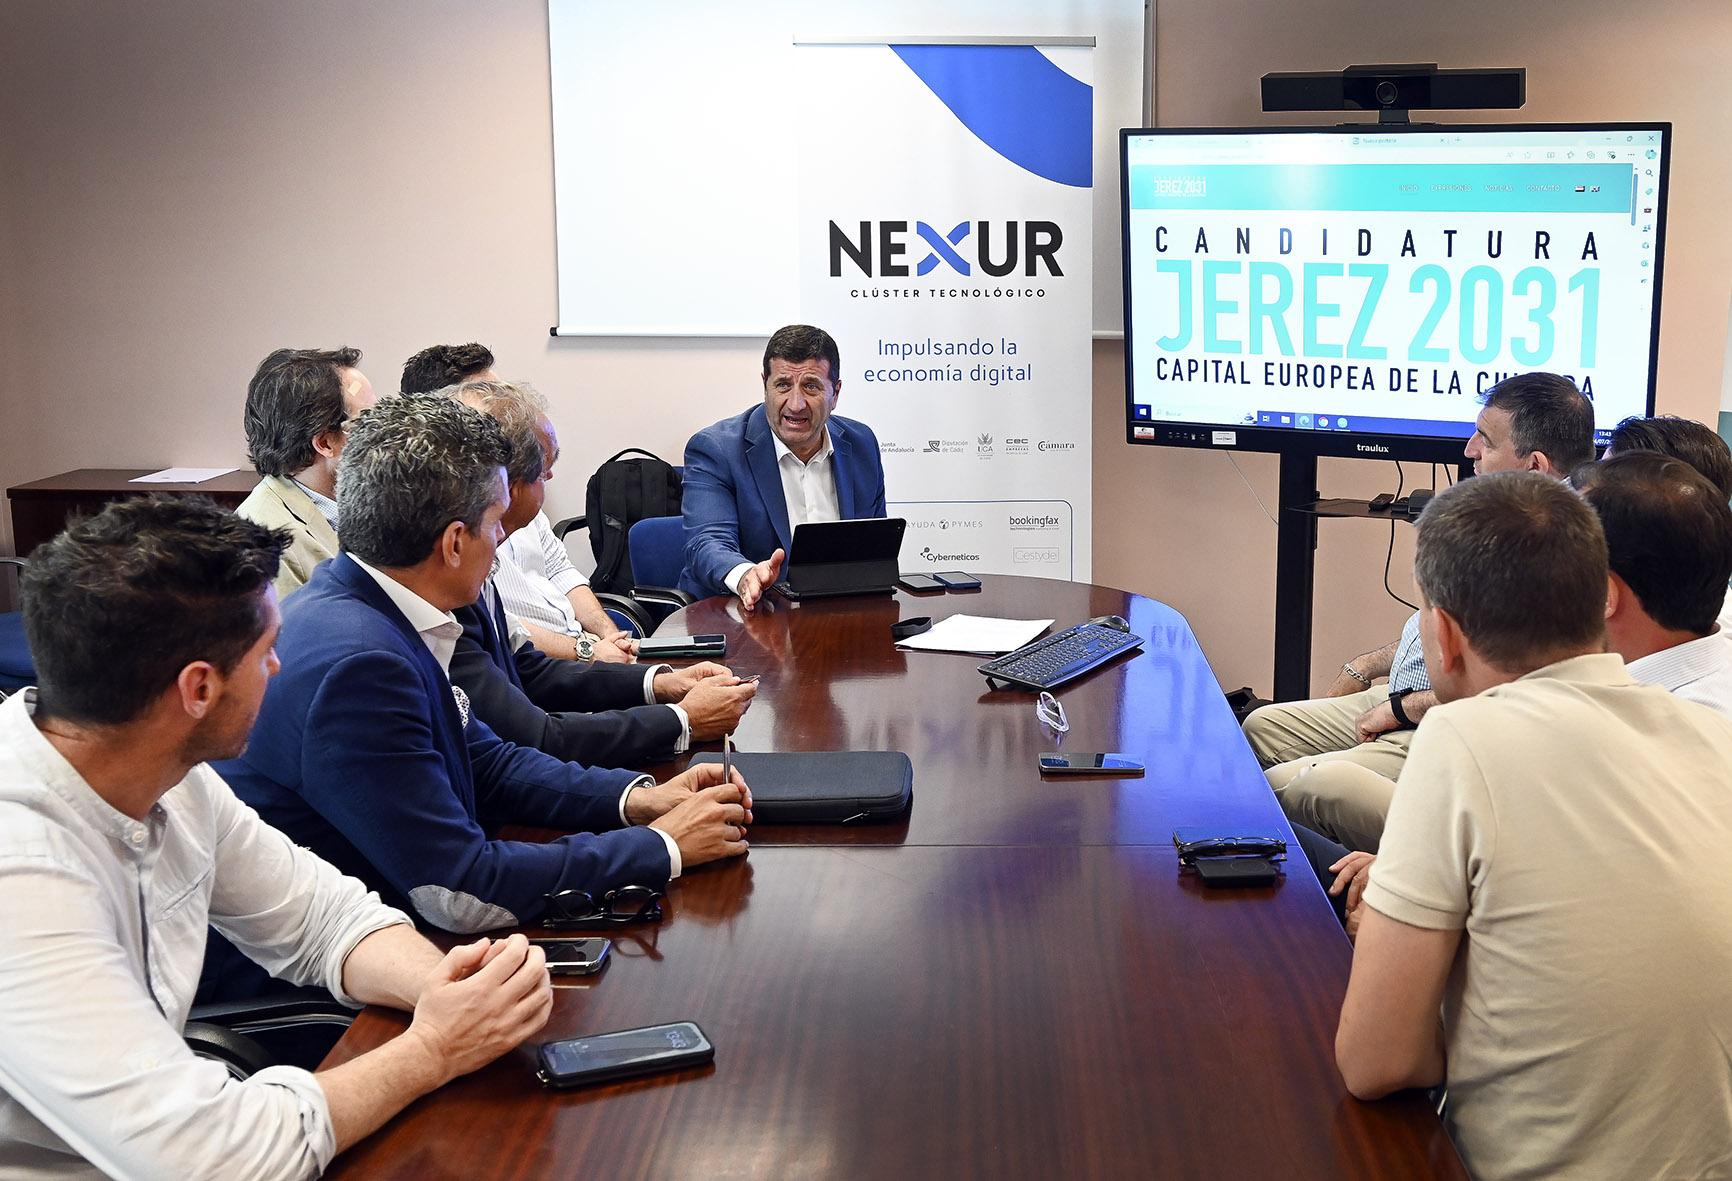 El Clúster Tecnológico Nexur se constituye formalmente y se adhiere a la candidatura de Jerez para ser Capital de la Cultura en 2031